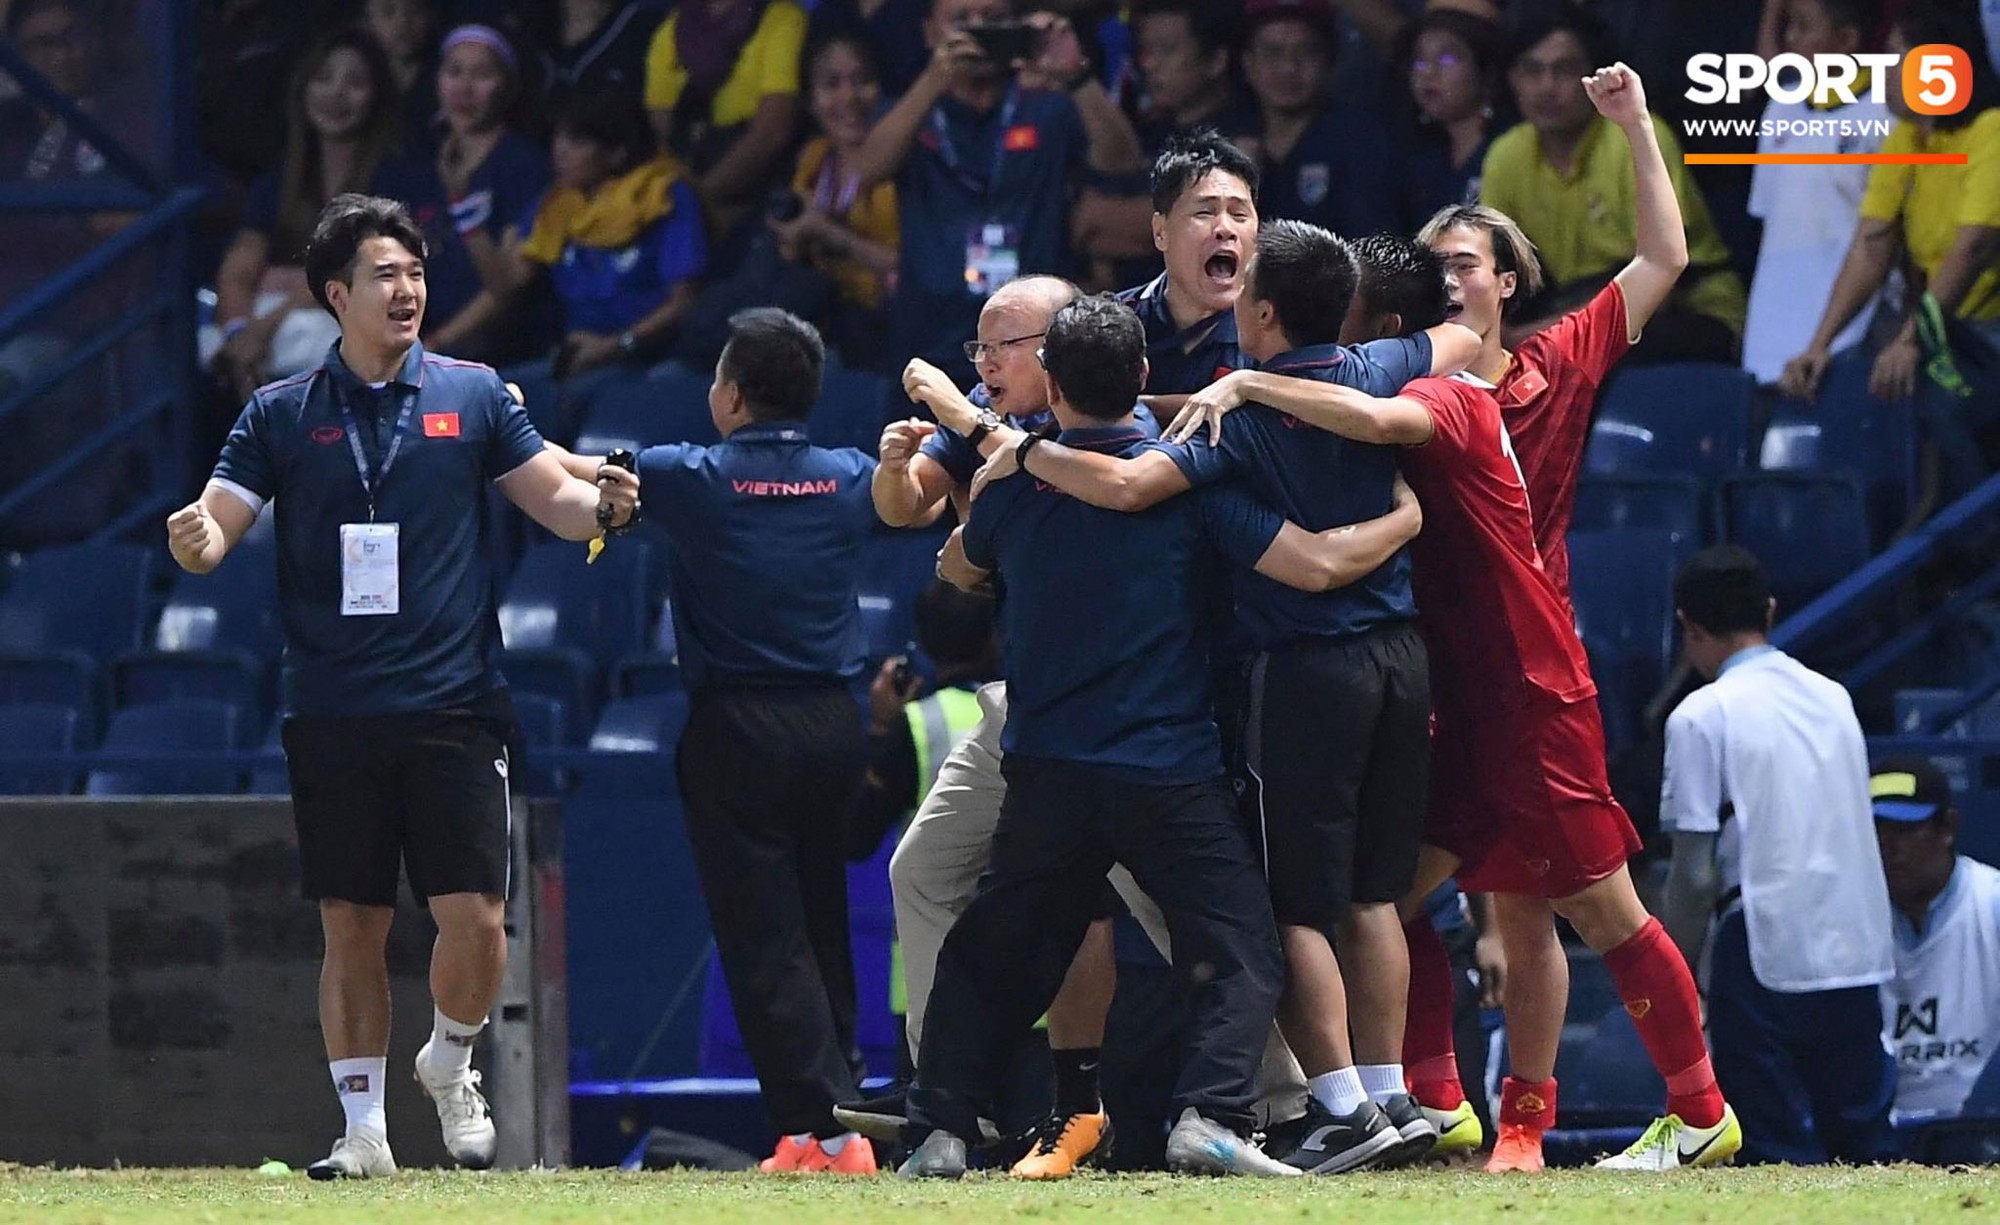 HLV Park Hang-seo ôm đầu tiếc nuối rồi vỡ òa sung sướng sau bàn thắng vàng của Anh Đức - Ảnh 2.